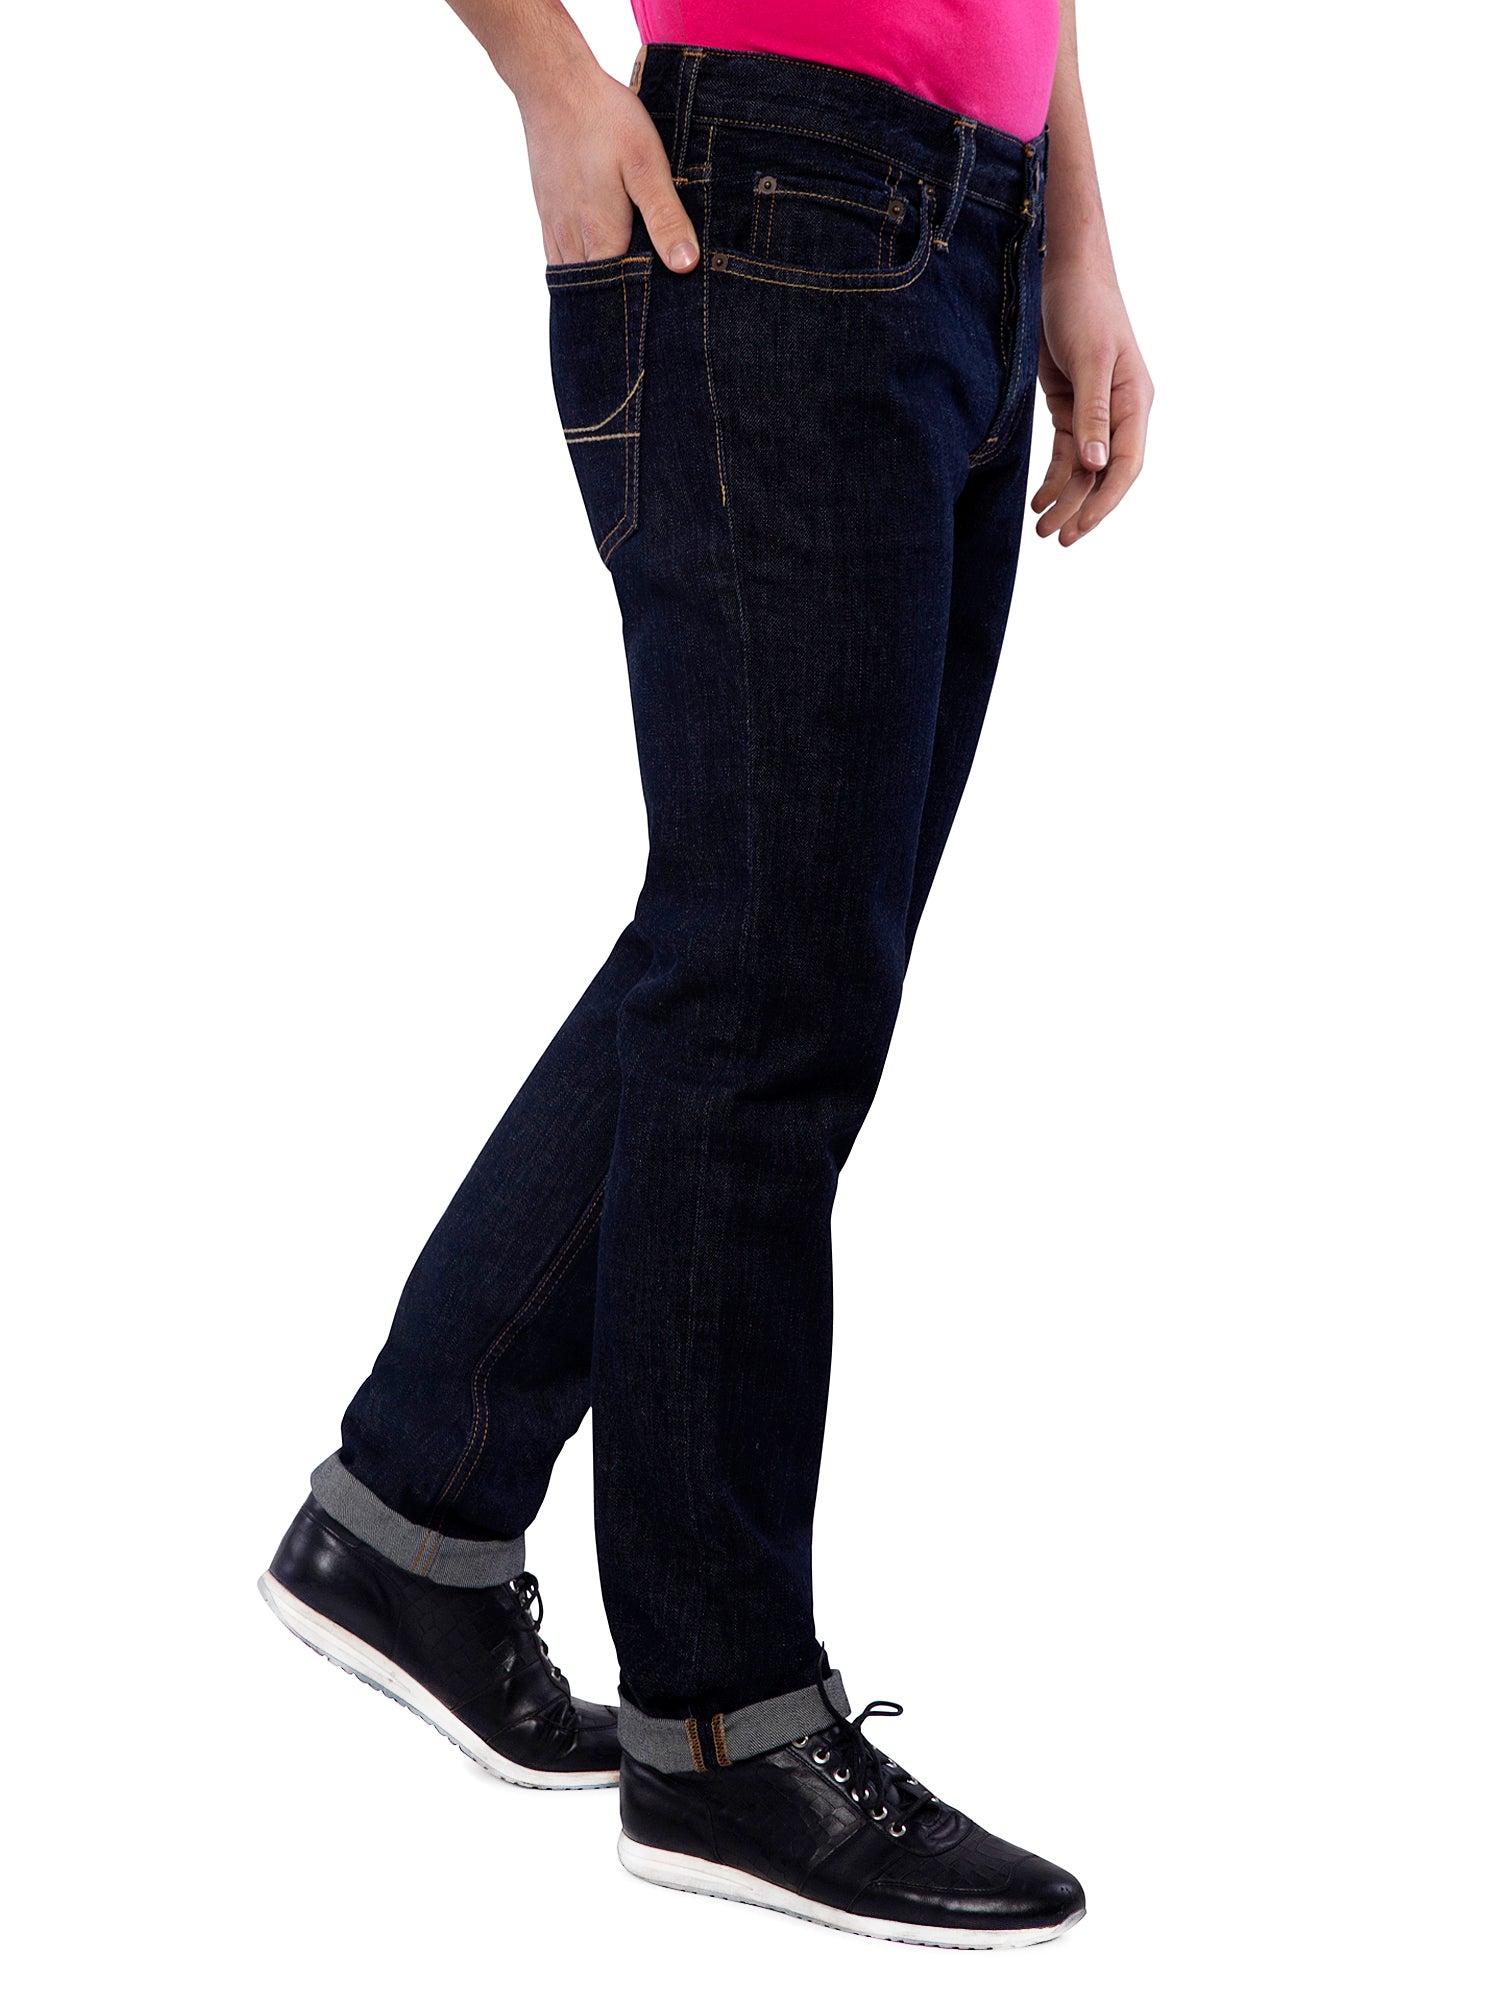 hollister black skinny jeans